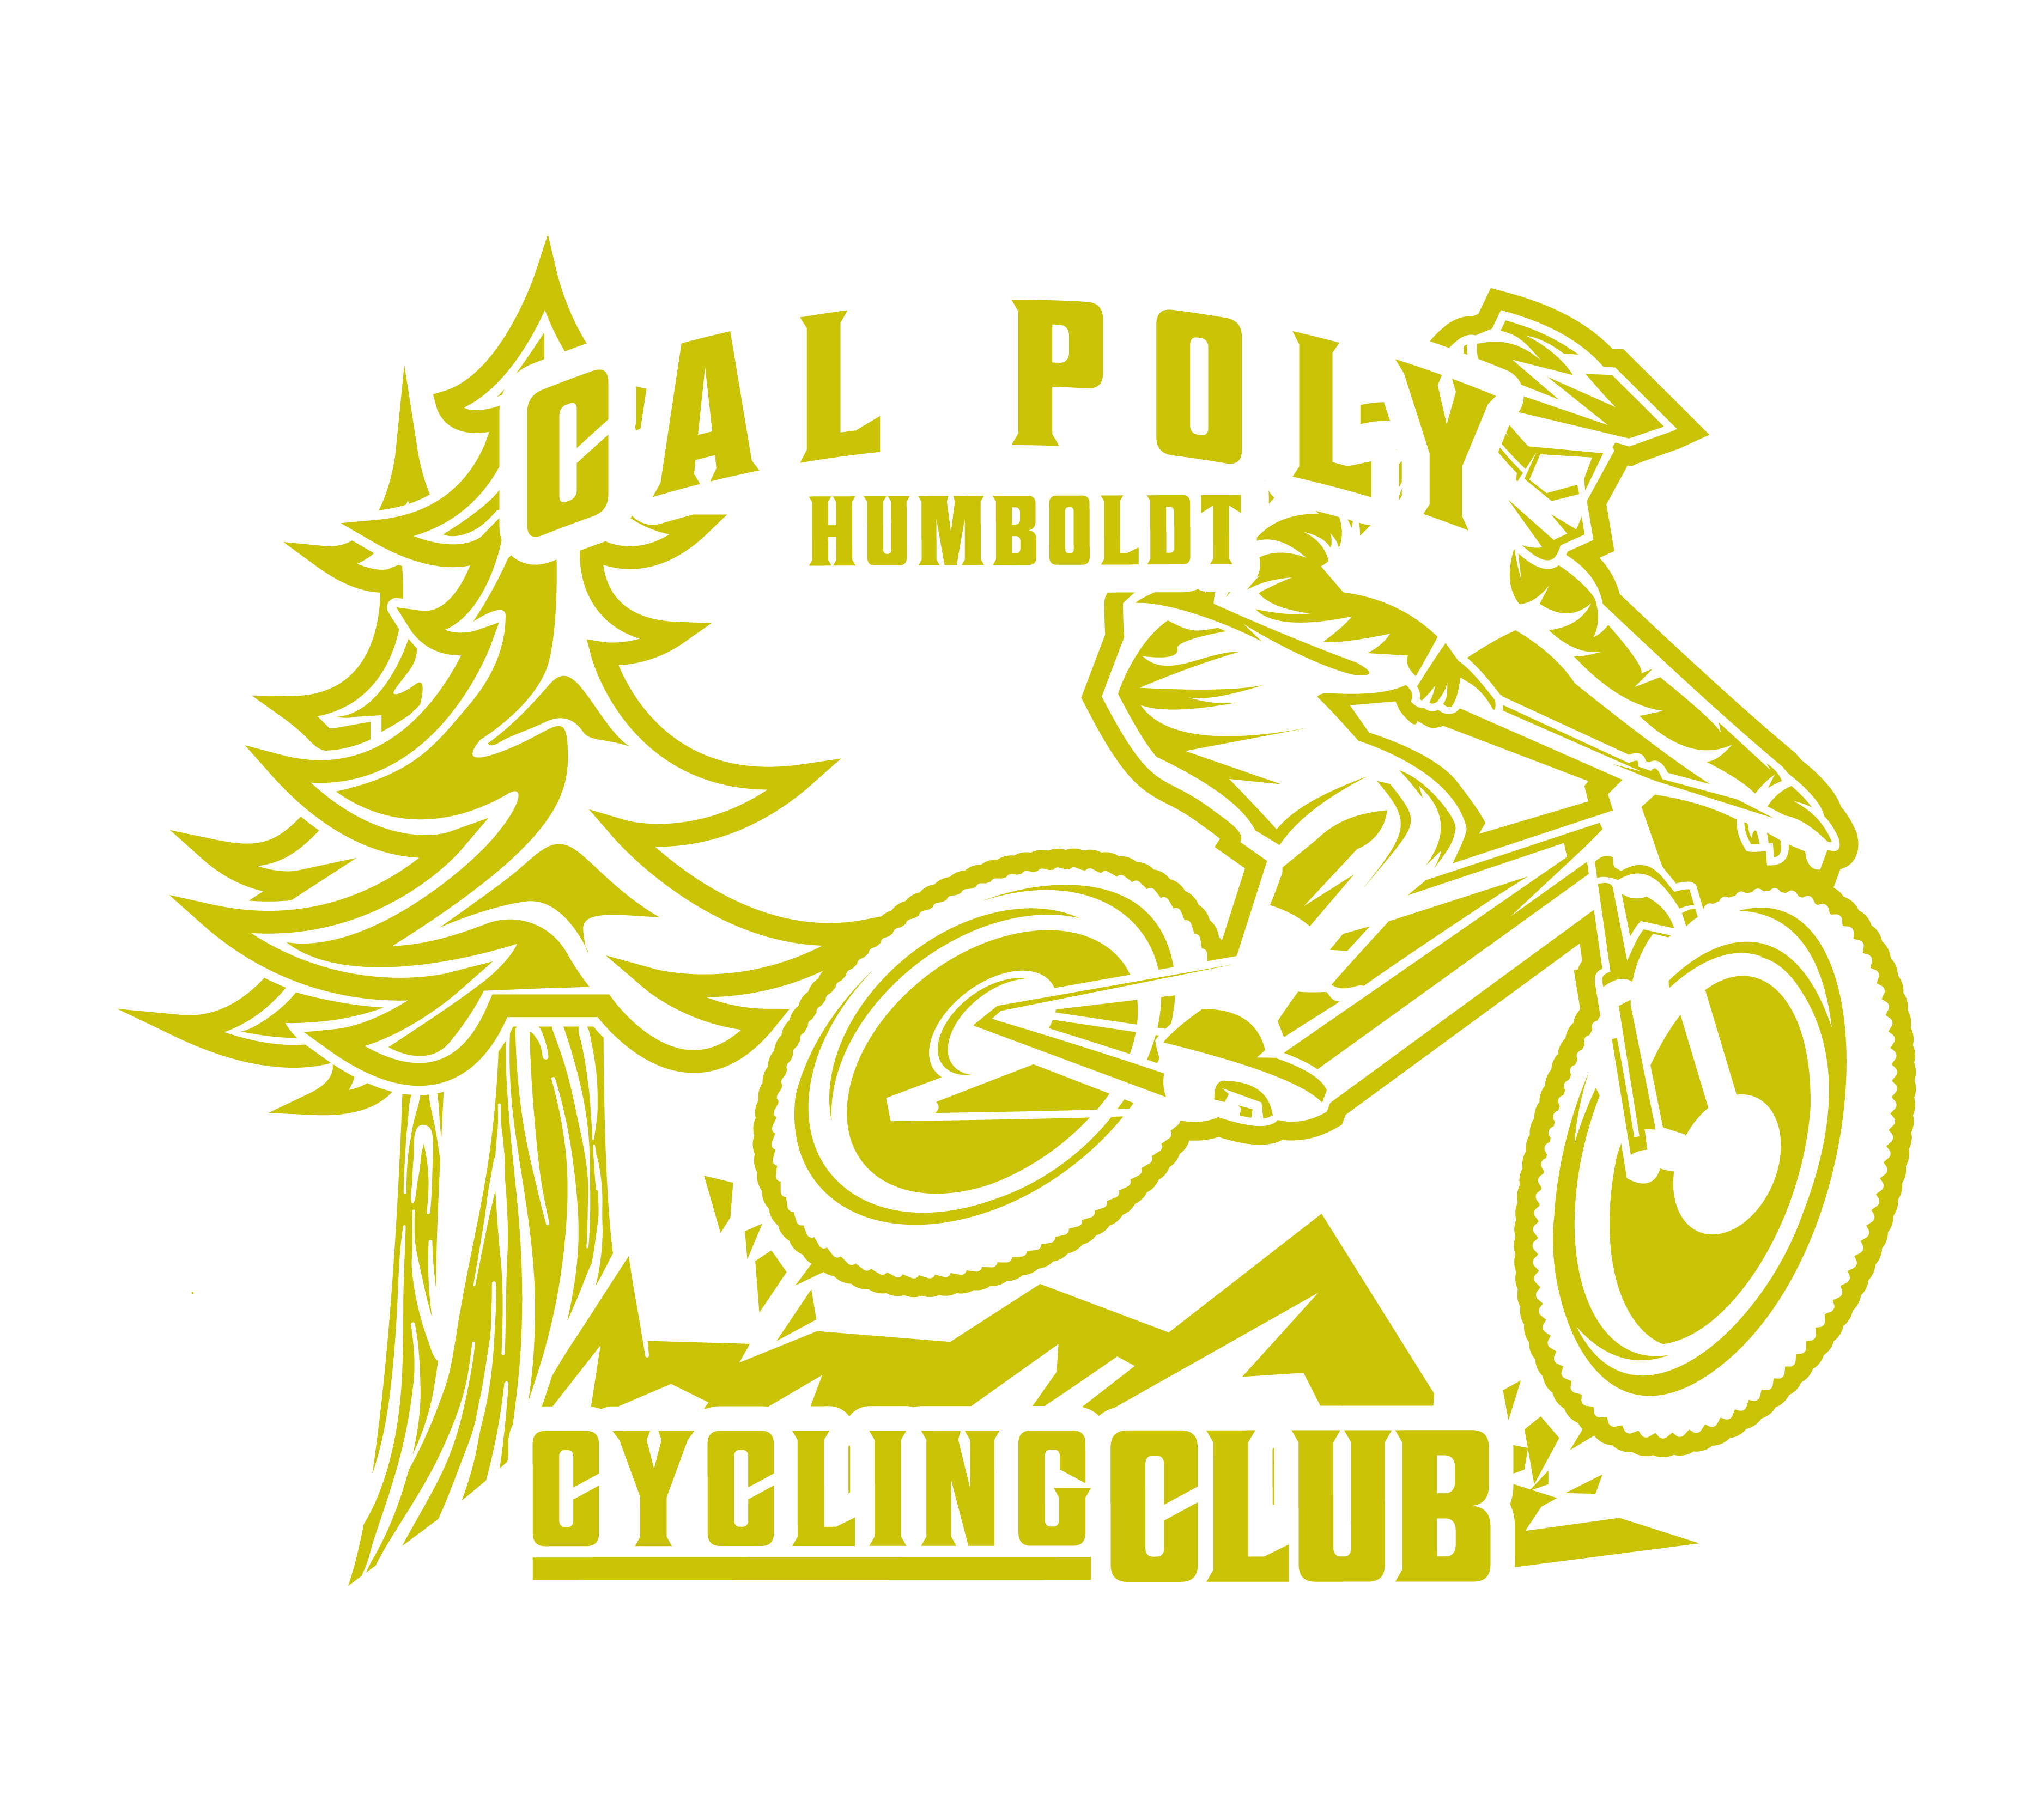 Cal poly cycling club logo